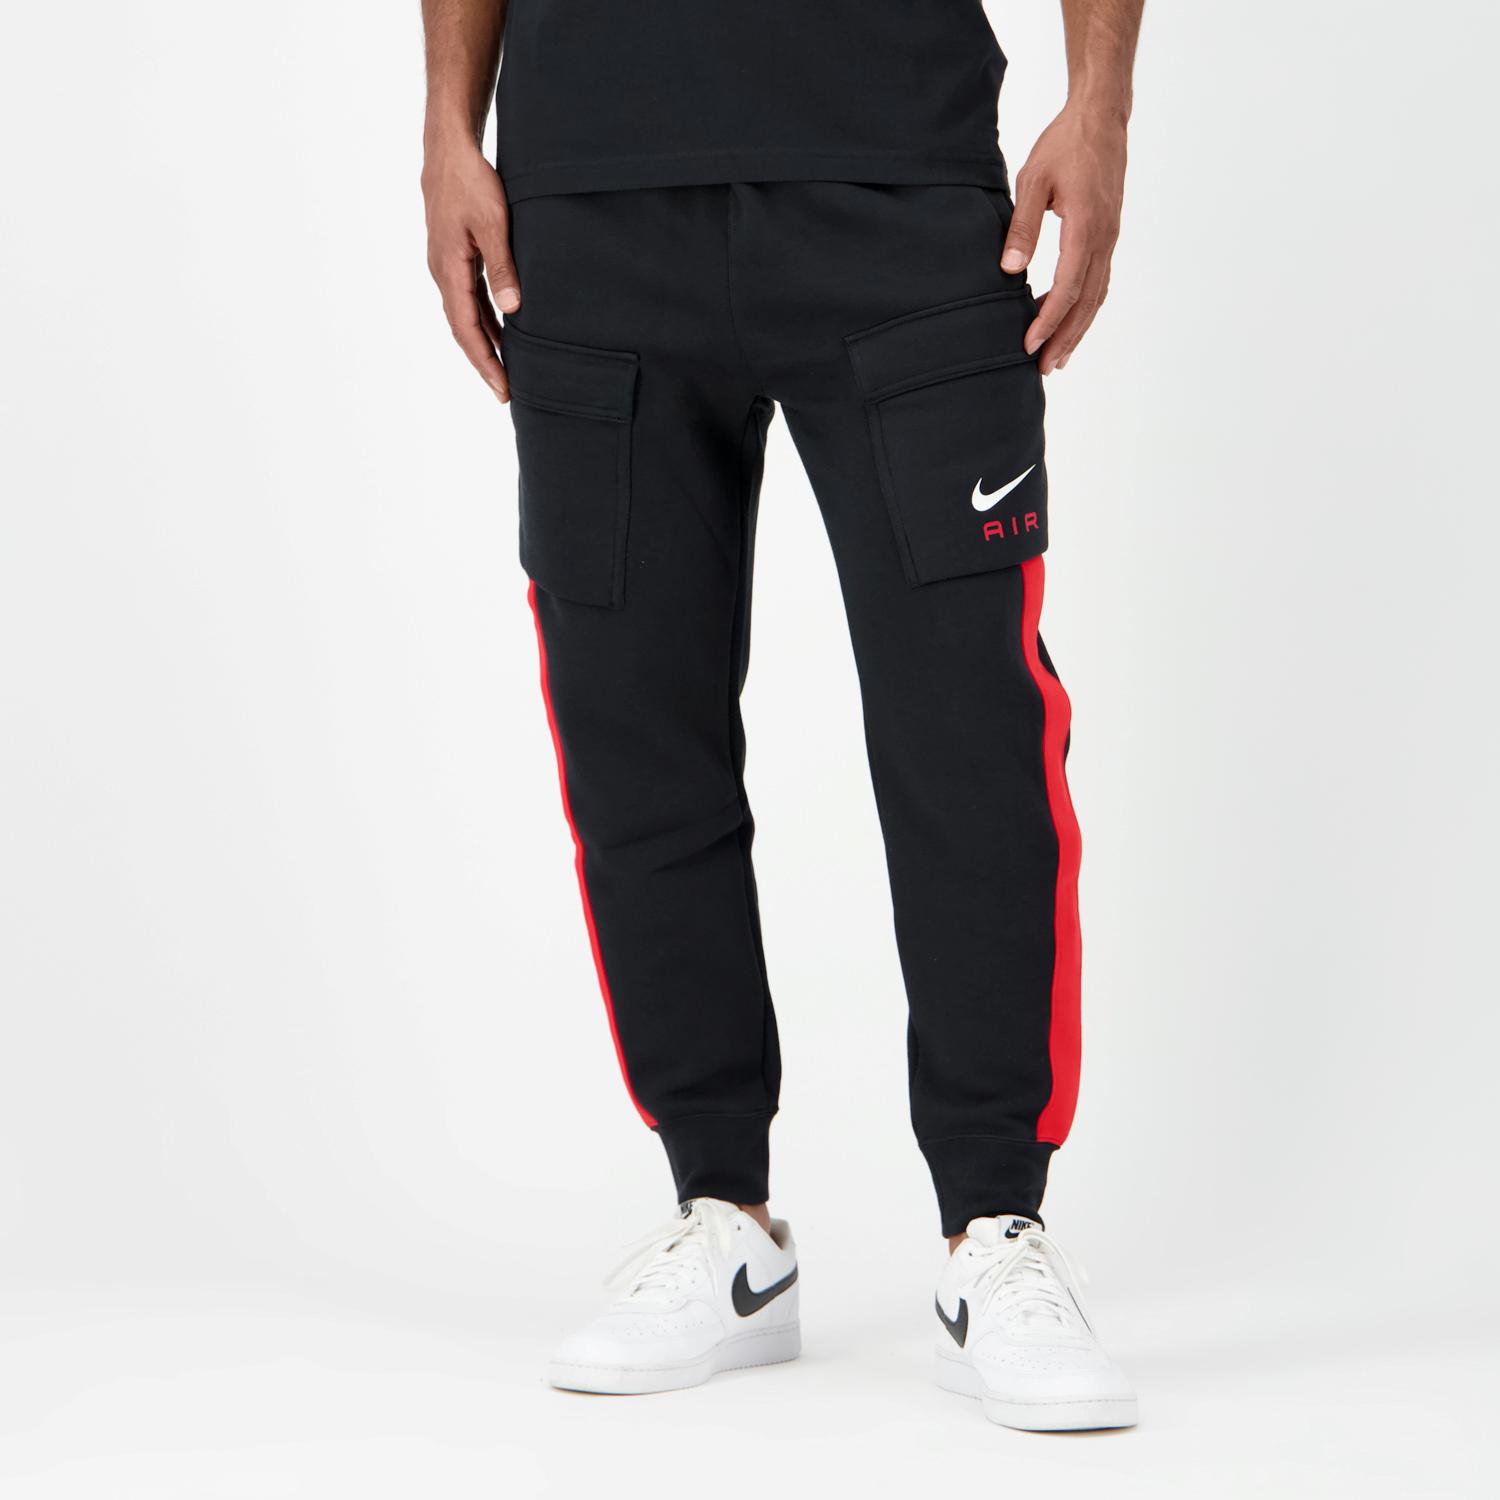 Pantalón Nike Air Cargo blanco, rojo y negro